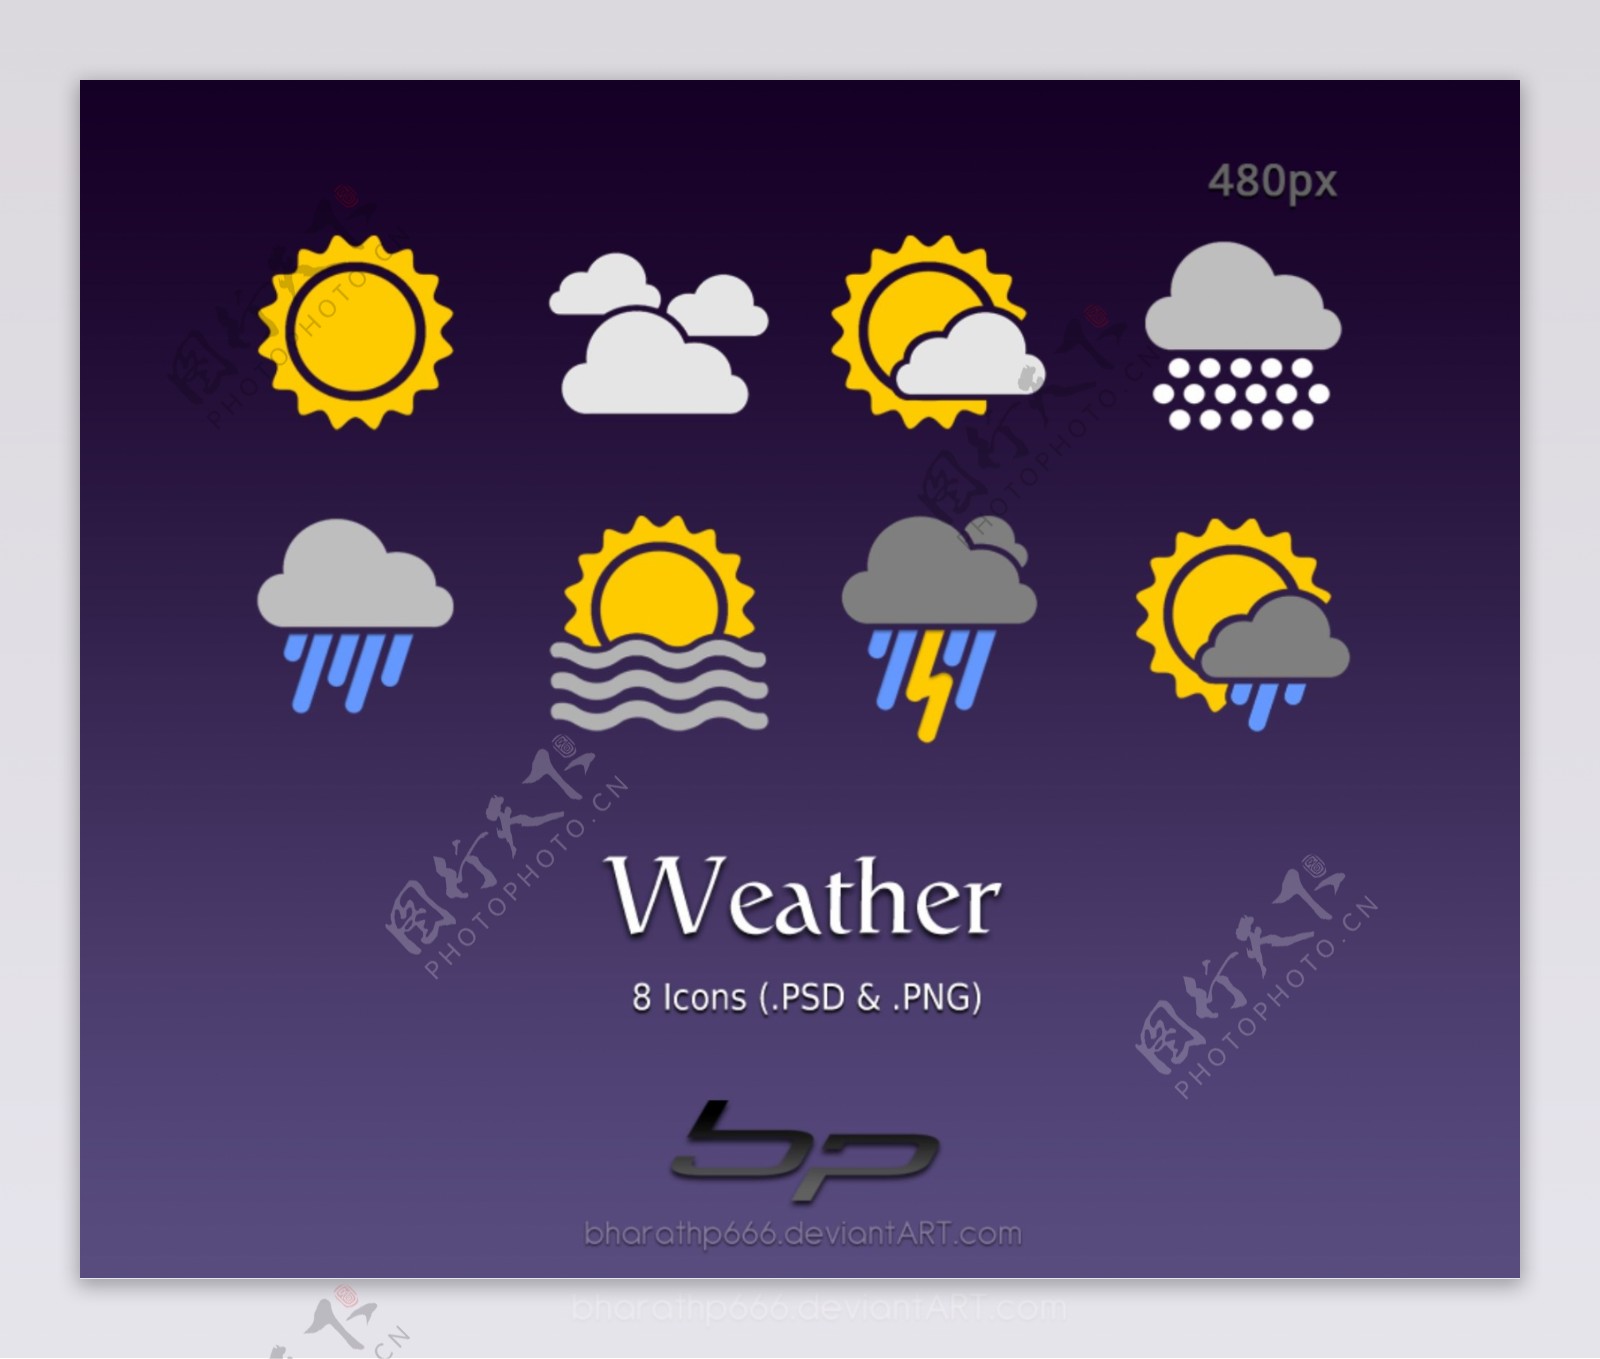 天气预报图标设计PSD图片素